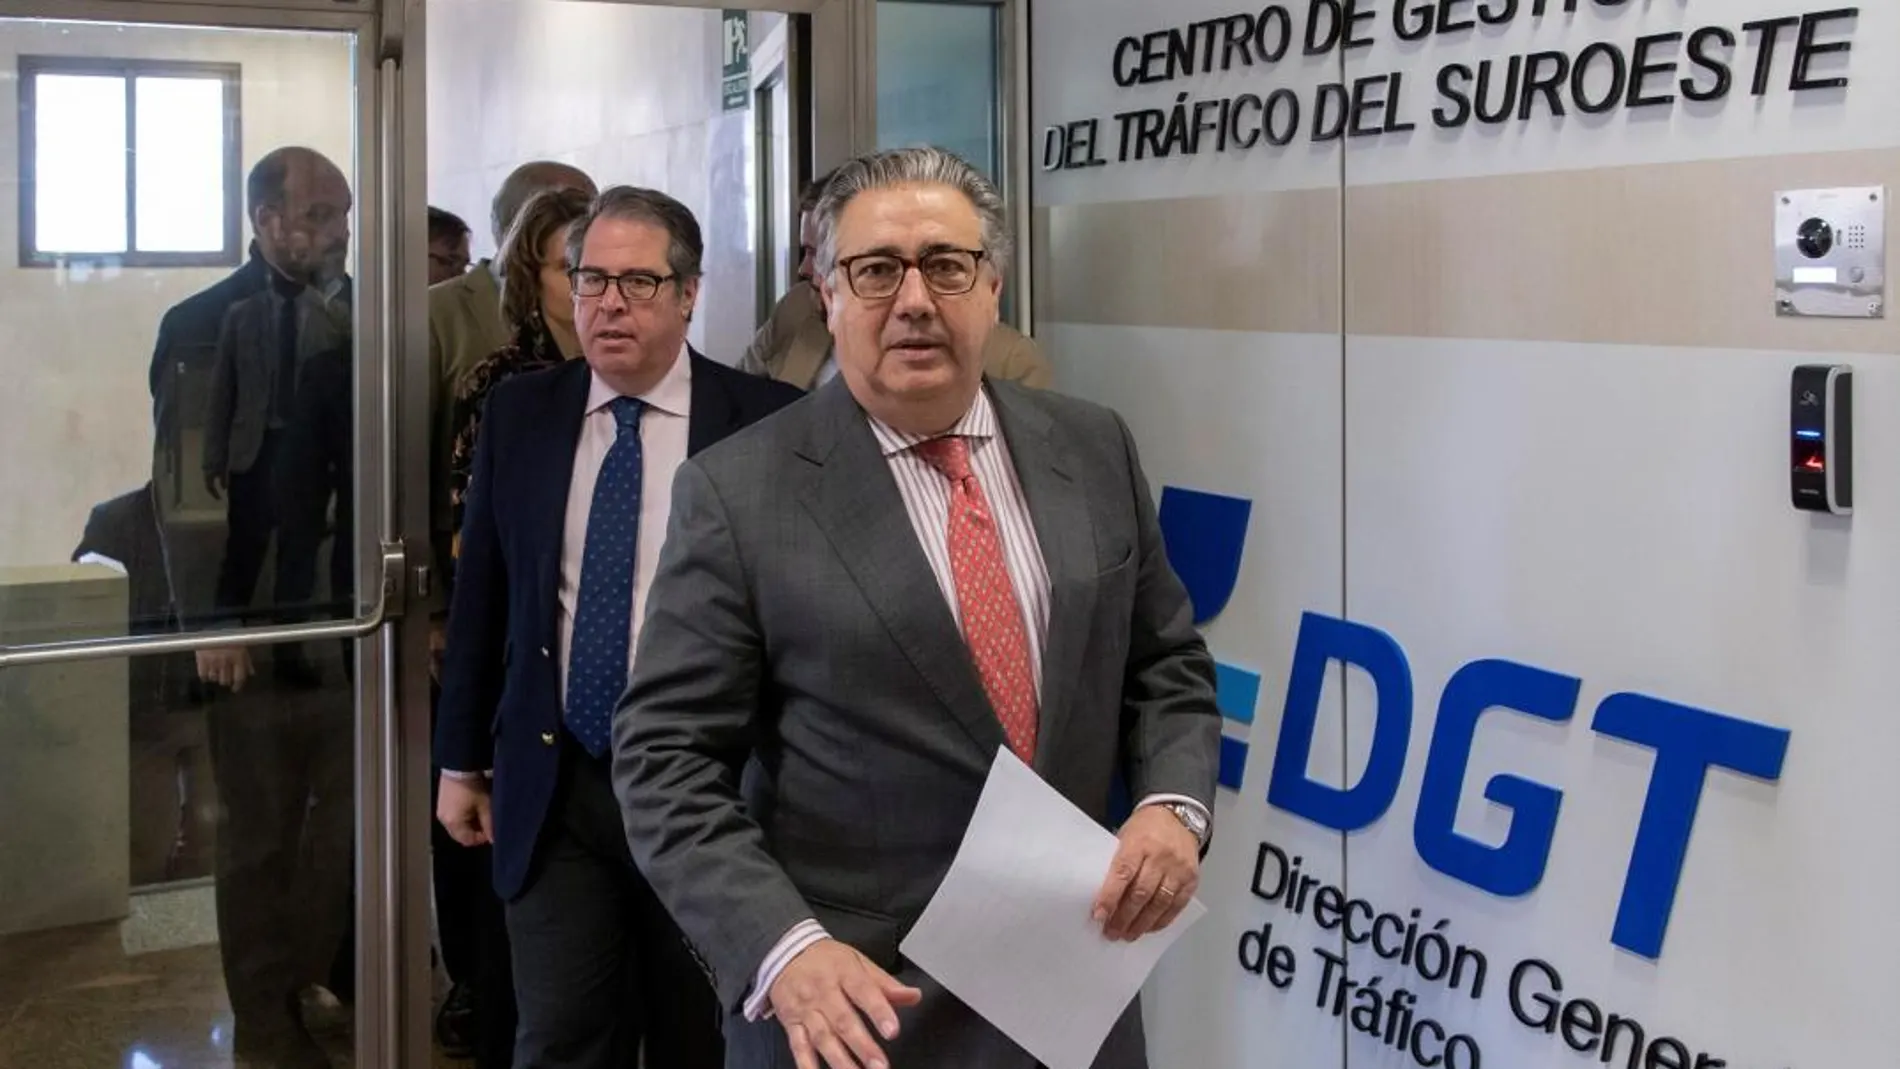 El ministro del Interior, Juan Ignacio Zoido durante su visita al Centro de Gestión del Tráfico del Suroeste de la Dirección General de Tráfico (DGT), con sede en Sevilla.